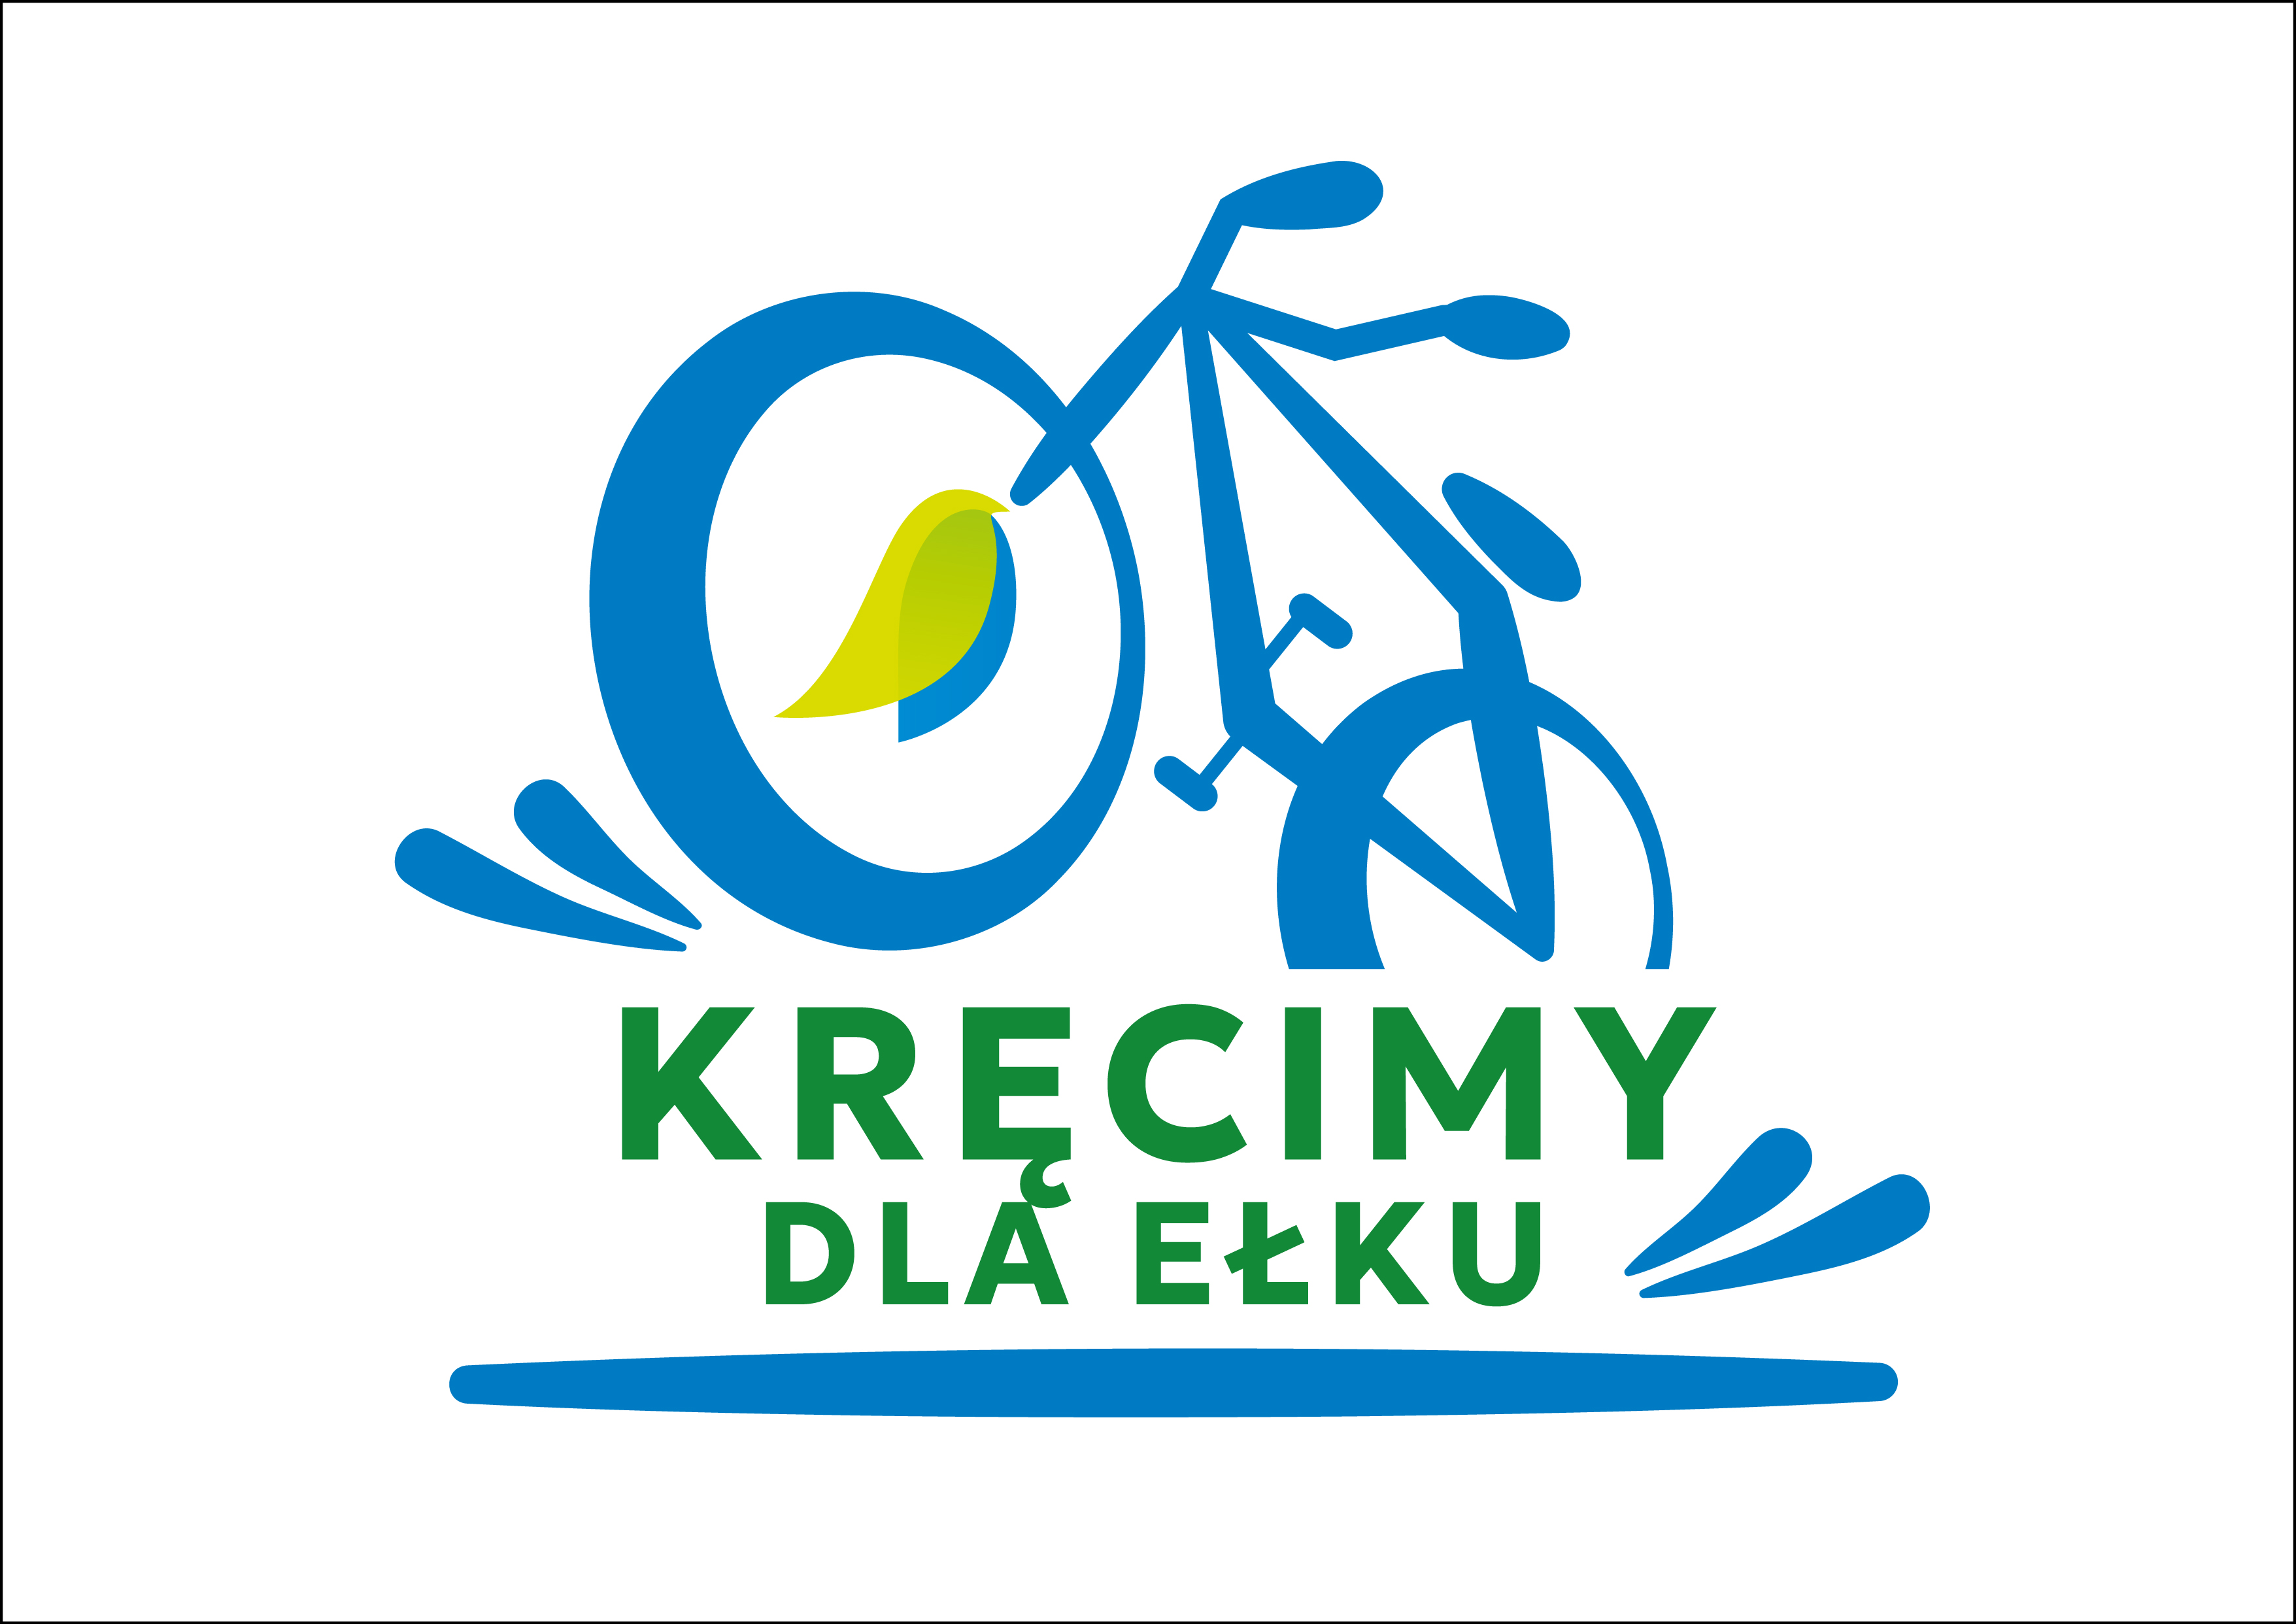 Ełk hat die Chance, die Fahrradhauptstadt Polens zu werden